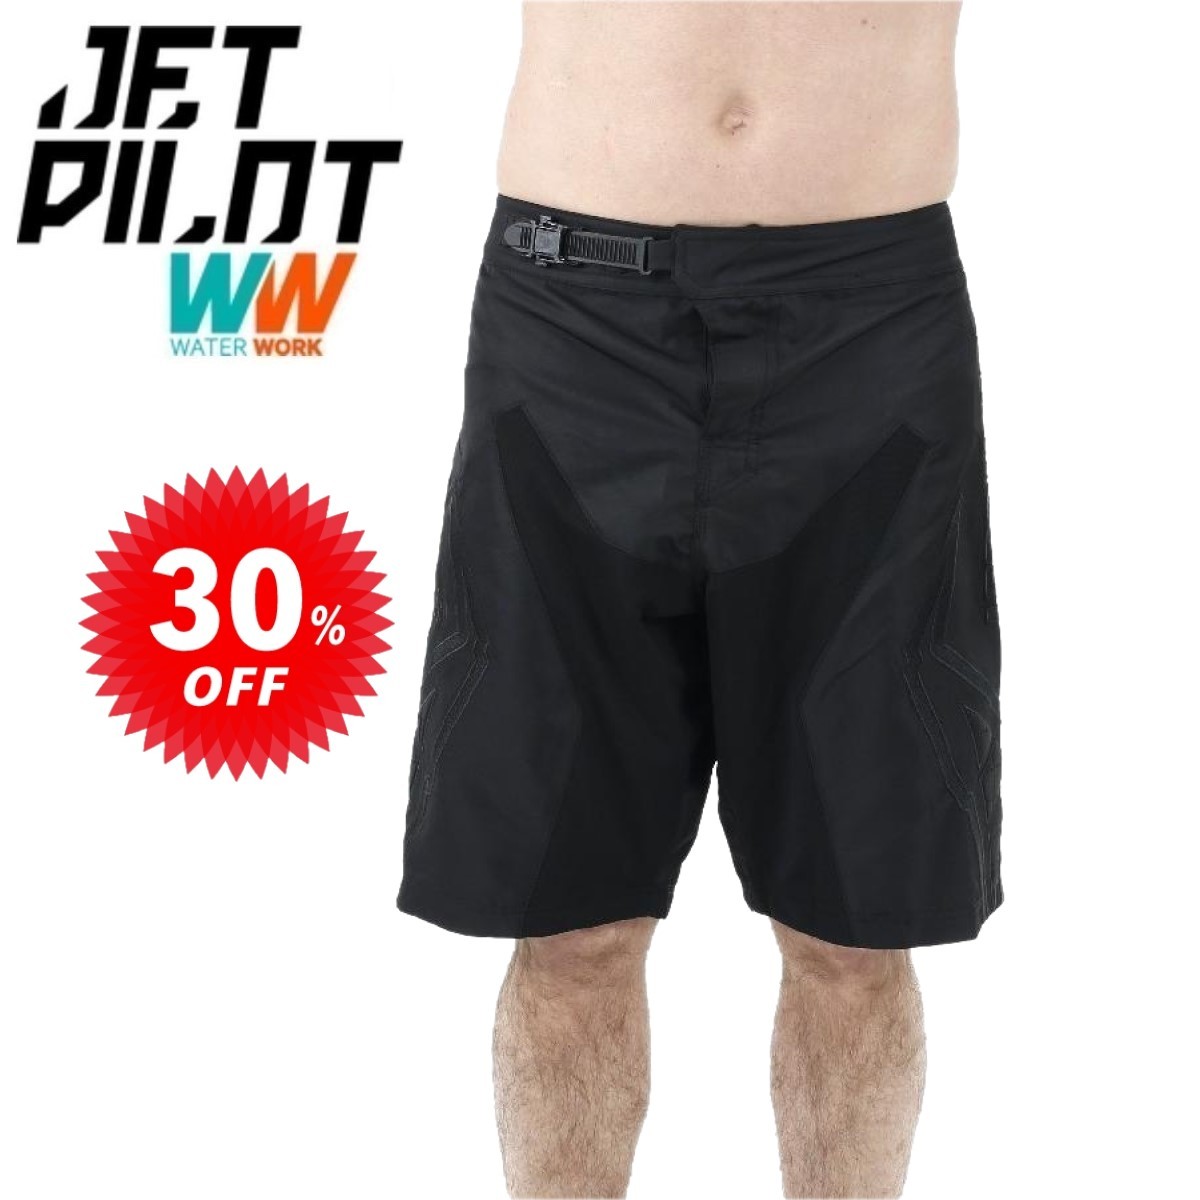 ジェットパイロット JETPILOT ボードパンツ セール 30%オフ 送料無料 ウルトラ メンズ ボードショーツ W19906 ブラック 30インチ 海パン